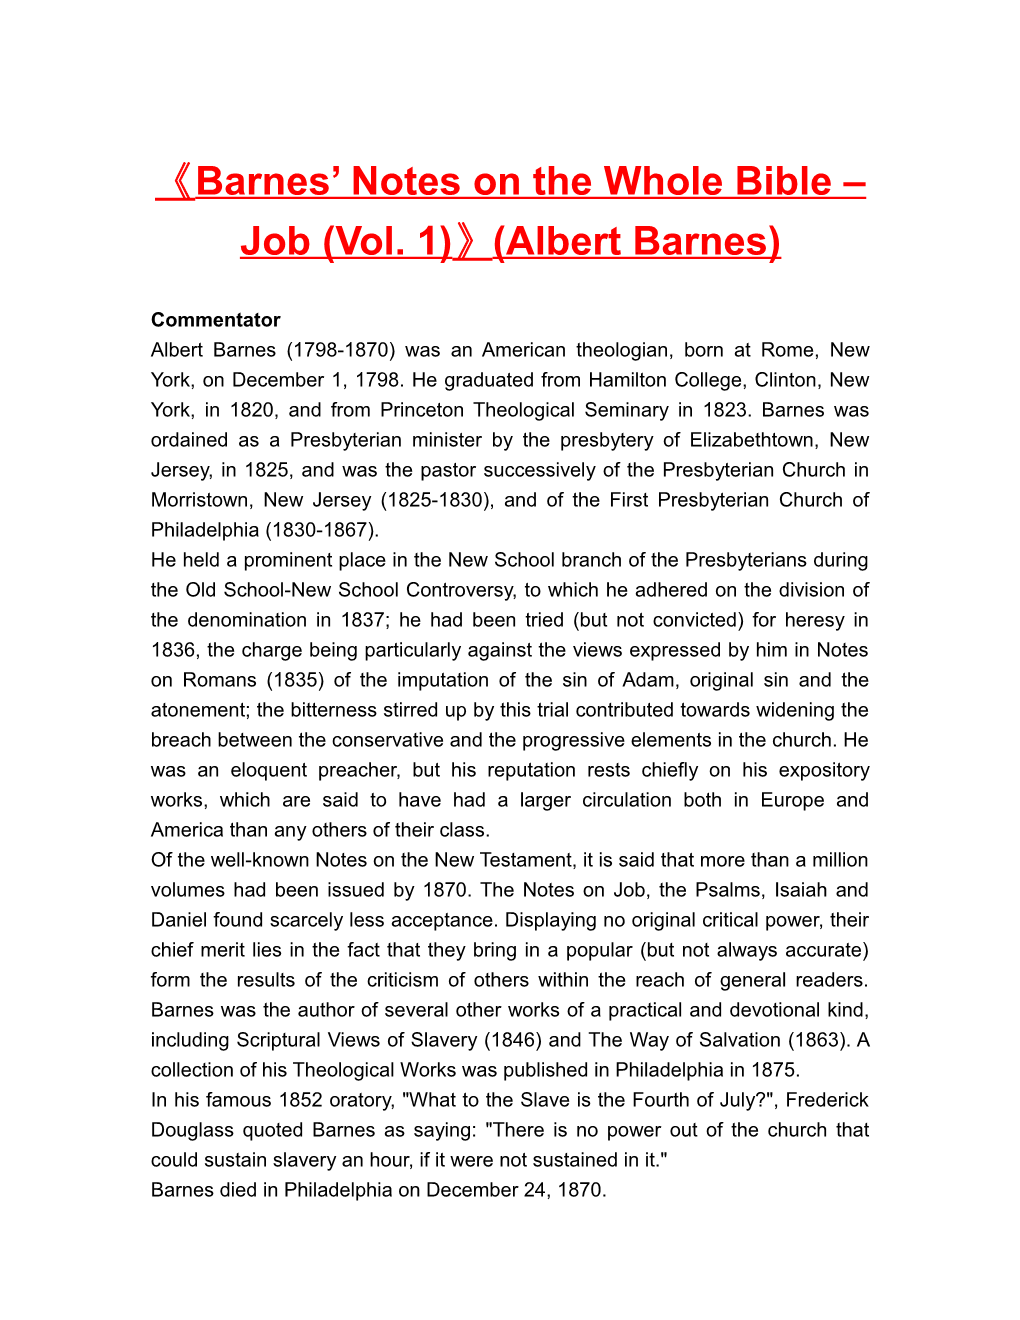 Barnes Notes on the Whole Bible Job (Vol. 1) (Albert Barnes)